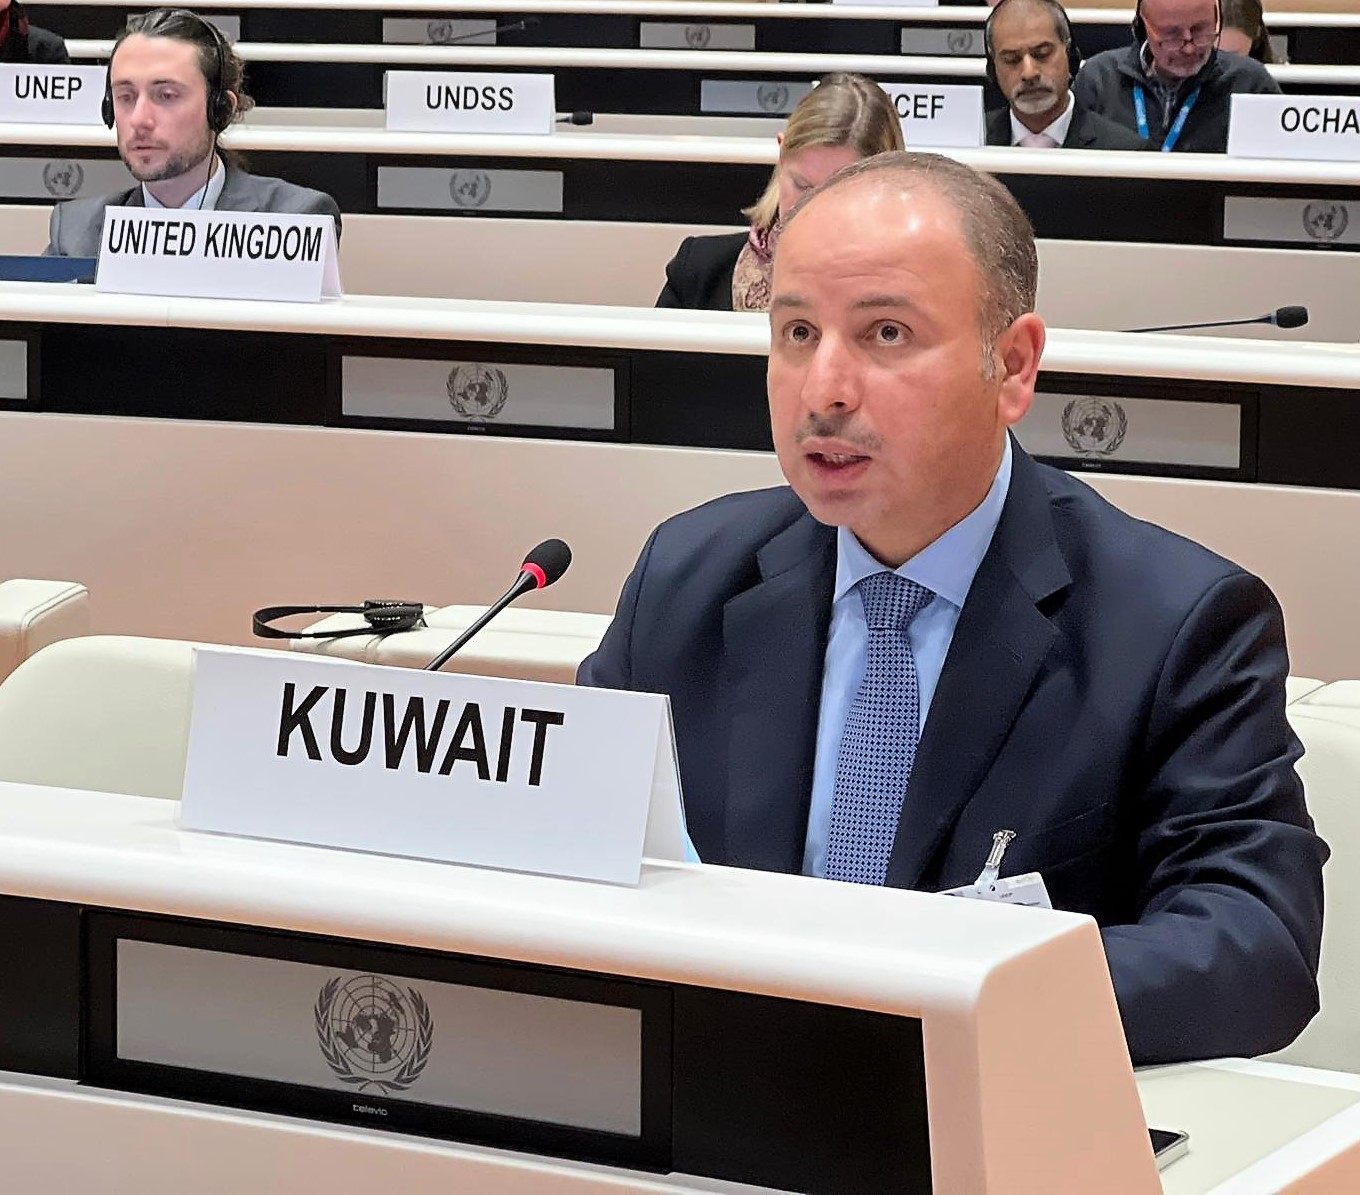 مندوب الكويت الدائم لدى الأمم المتحدة والمنظمات الدولية الأخرى في جنيف السفير ناصر الهين يلقي كلمة دولة الكويت أمام مجلس الأمم المتحدة لحقوق الإنسان